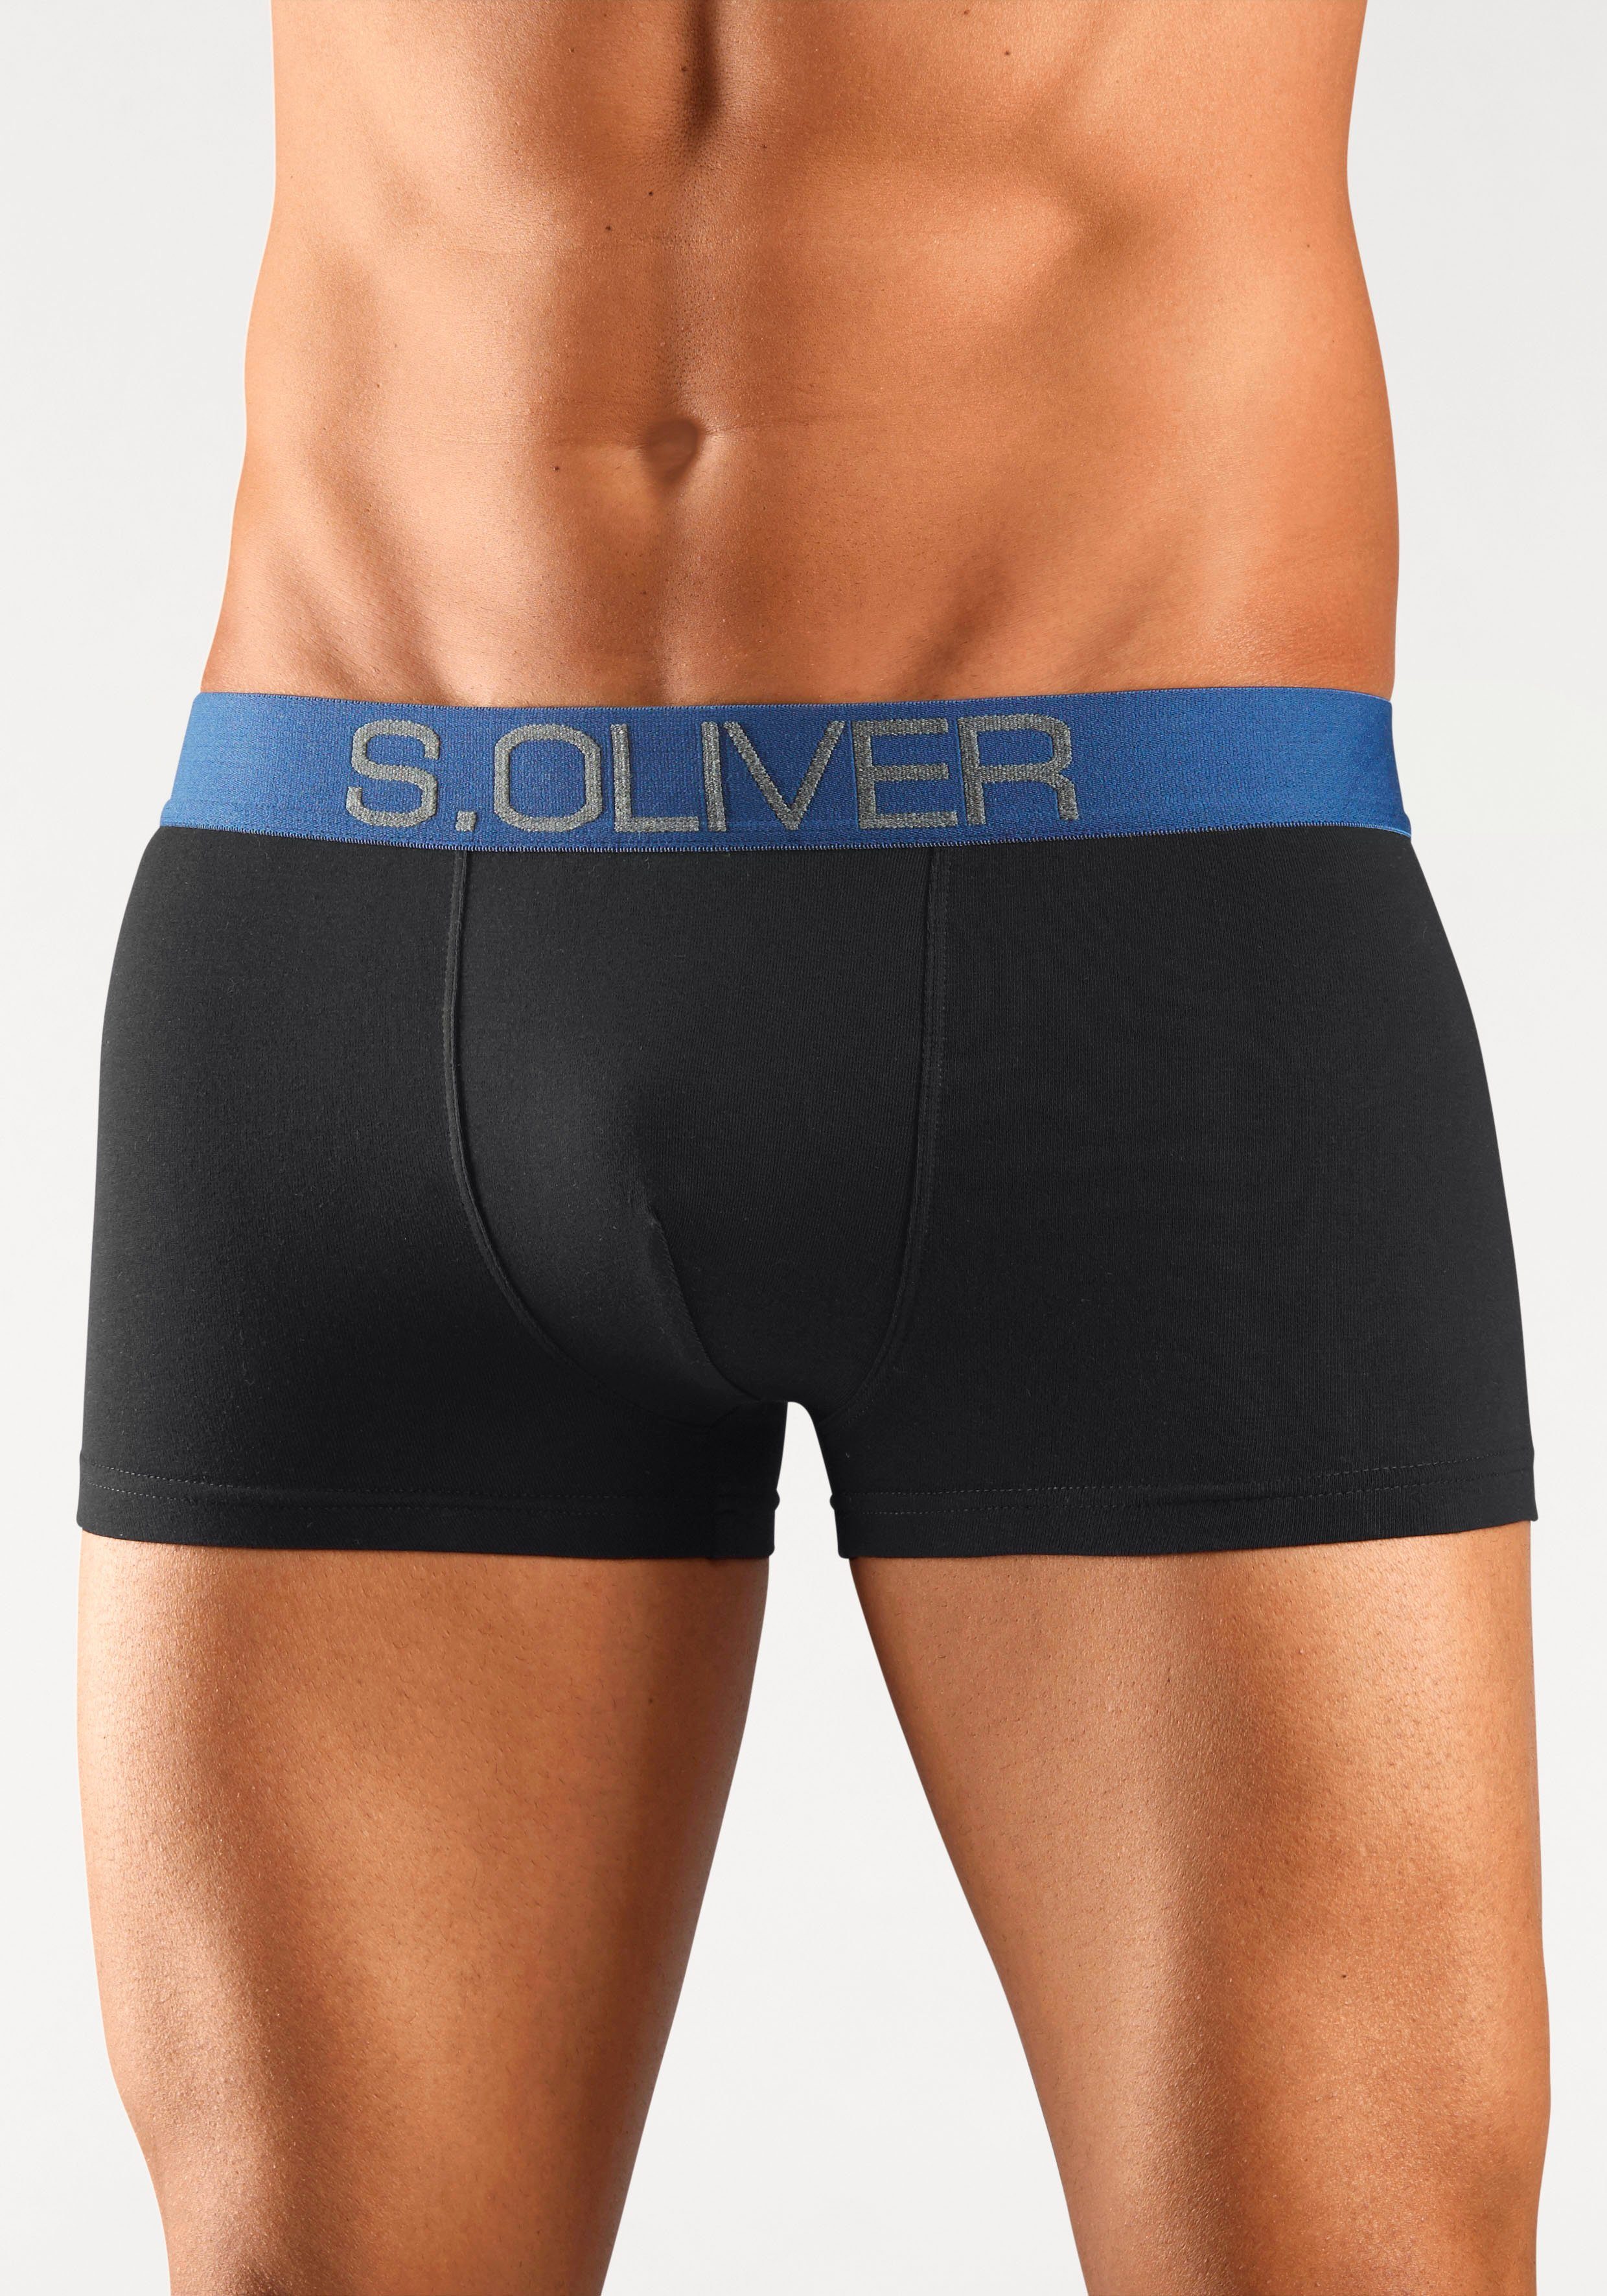 s.Oliver Boxershorts (Packung, Hipster-Form schwarz-khaki, Webbund schwarz-anthrazit, 4-St) in schwarz-bordeaux, mit kontrastfarbenem schwarz-blau